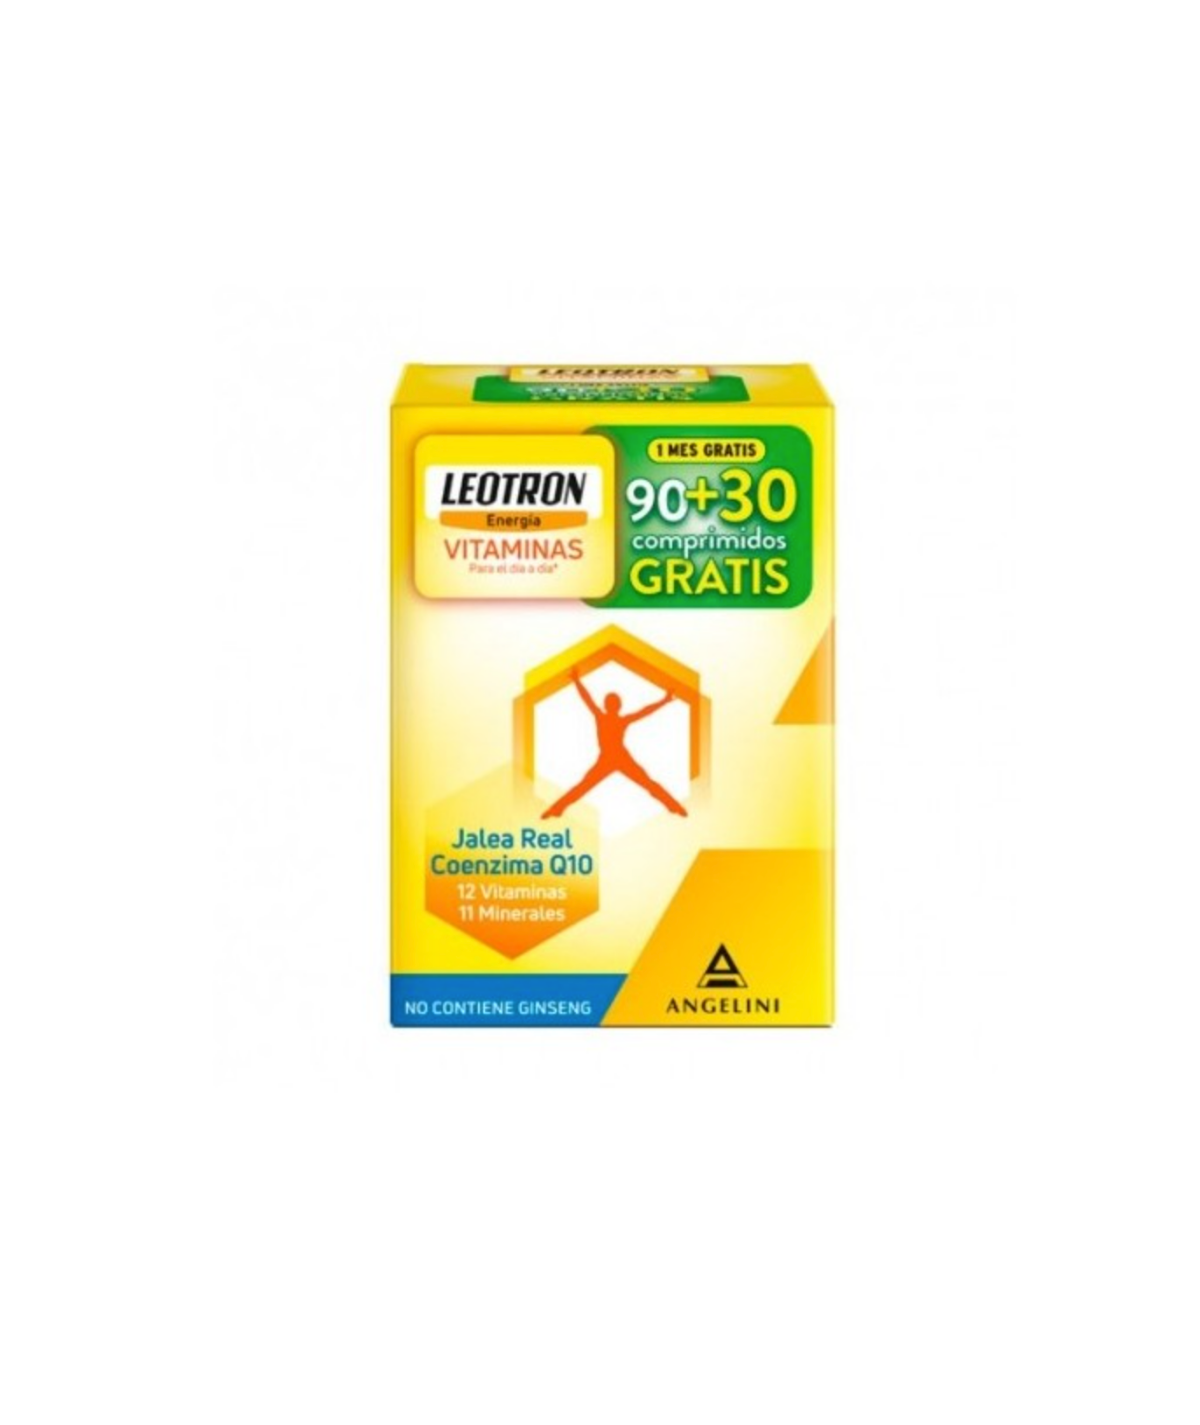 Leotron Vitamina Pack PROMO 90 + 30 comprimidos